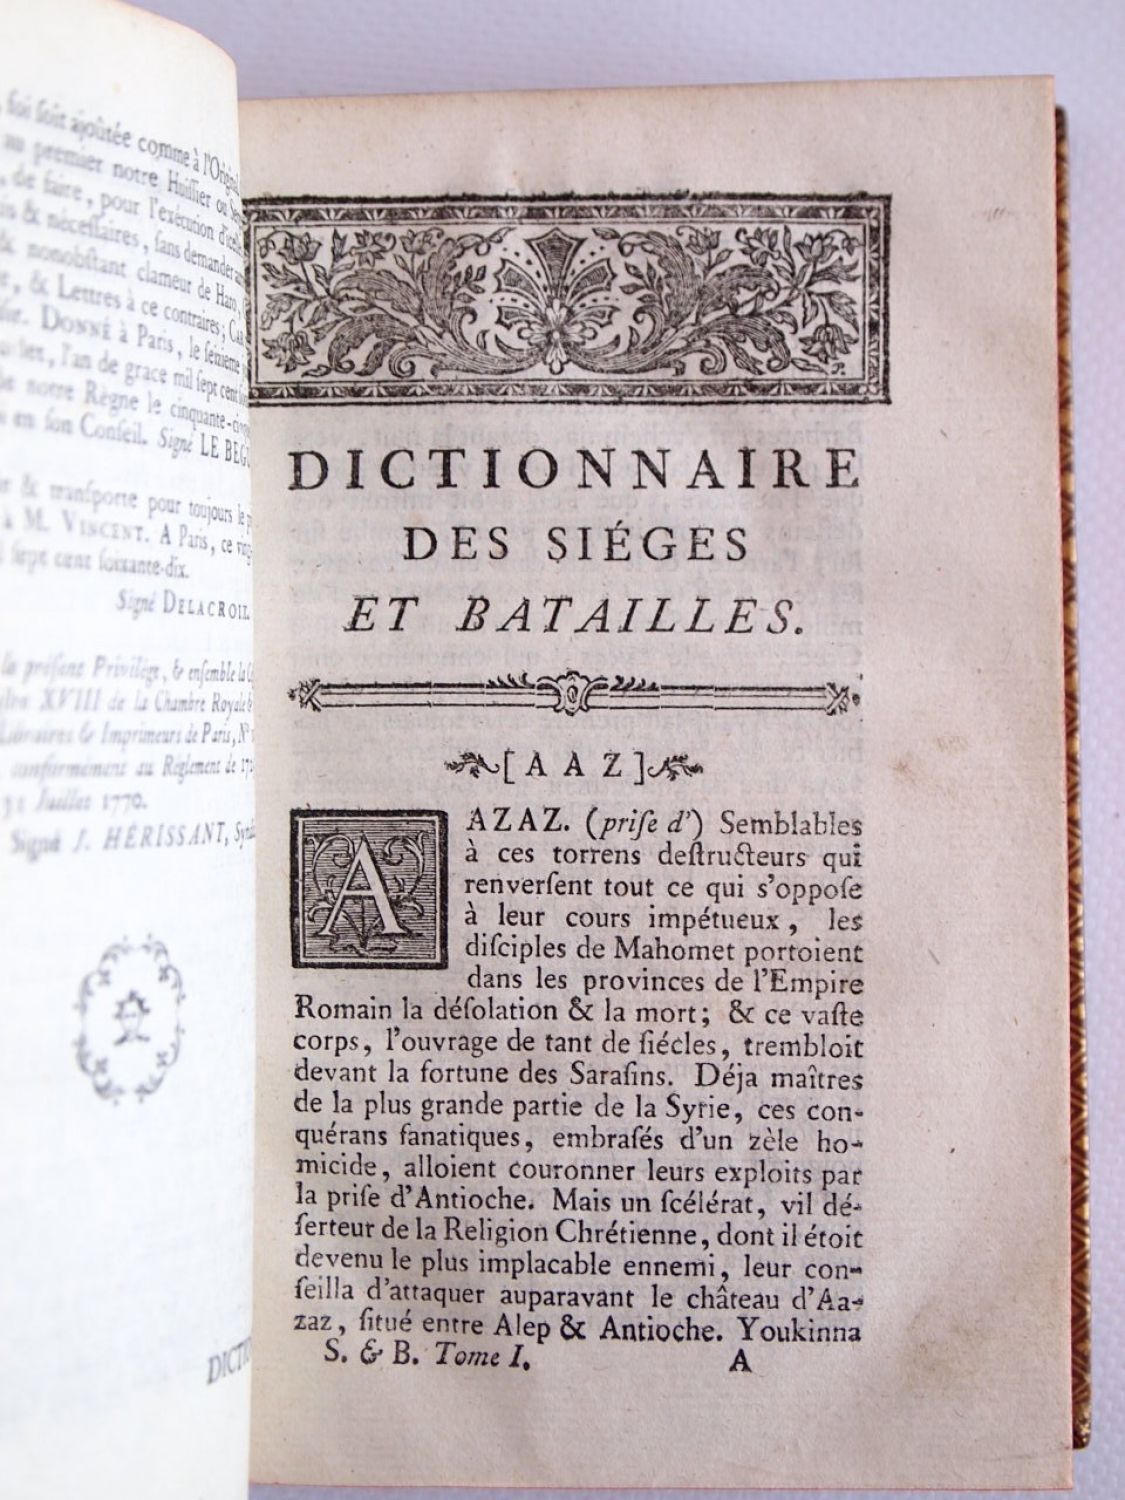 Amazonfr - Dictionnaire historique de la France